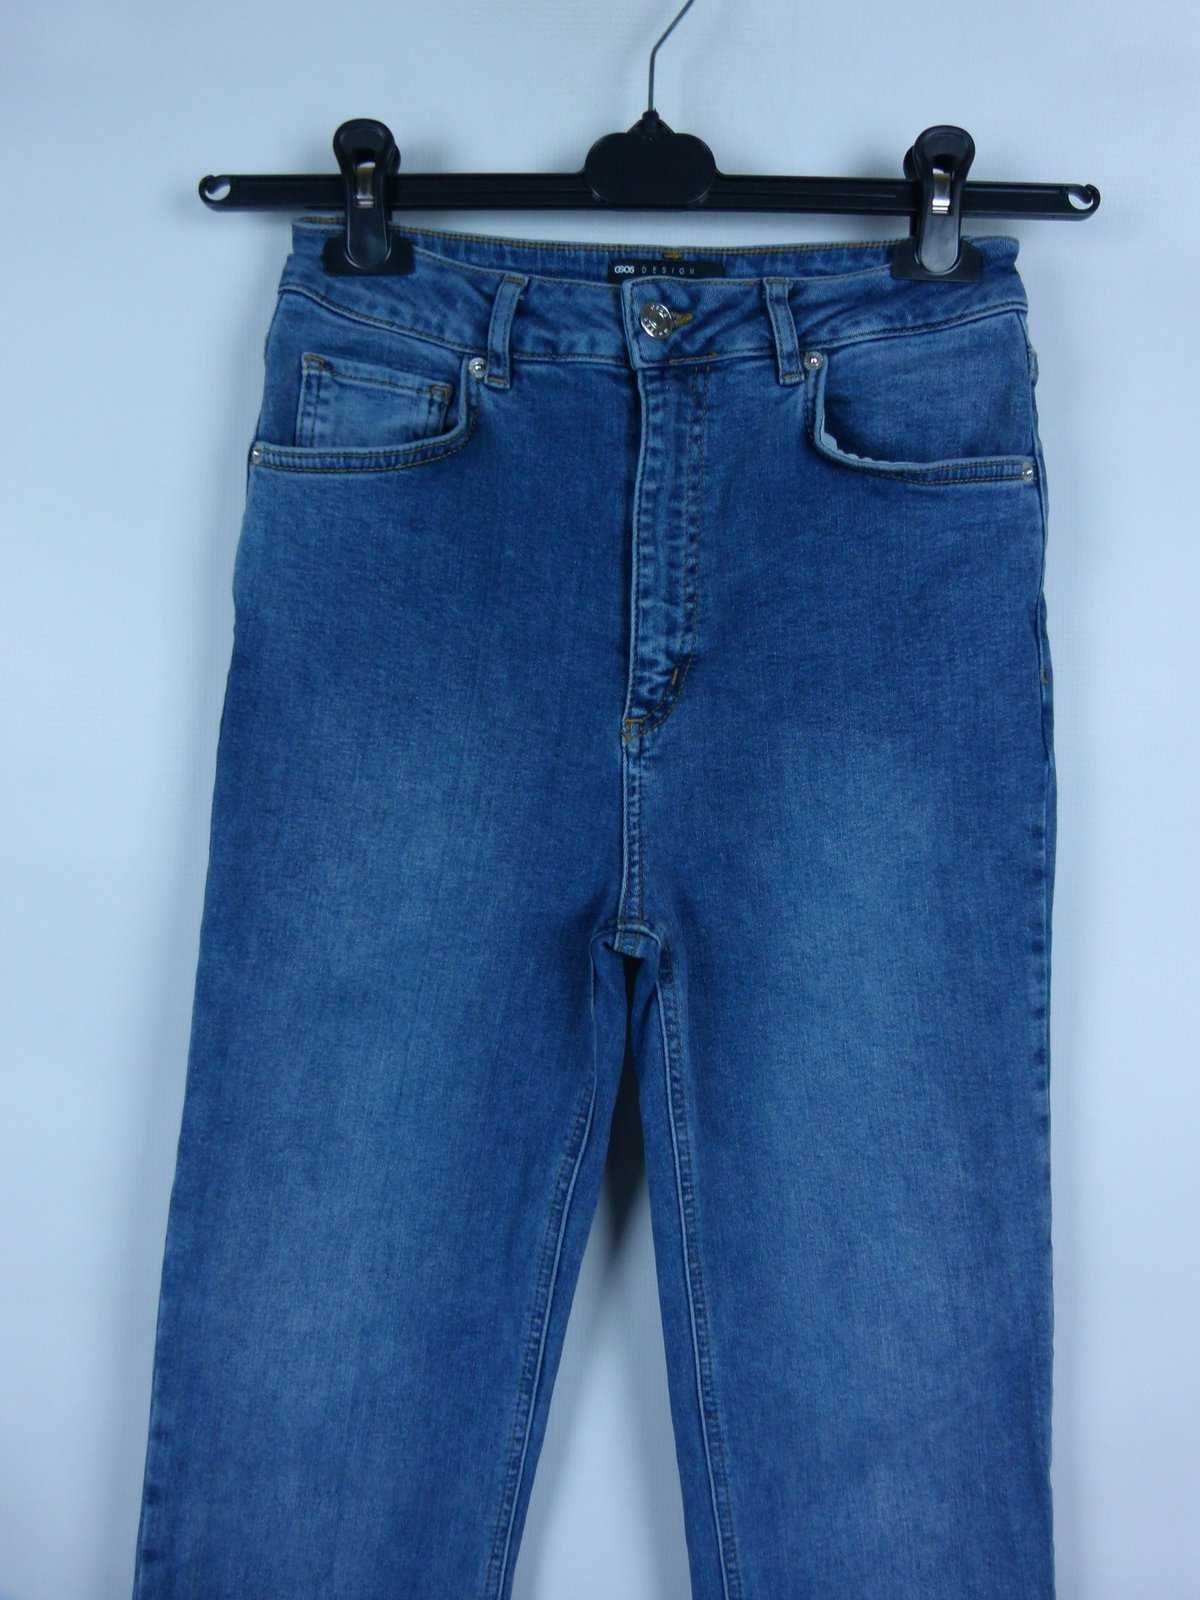 ASOS spodnie jeans wysoki stan proste nogawki 25 / 32